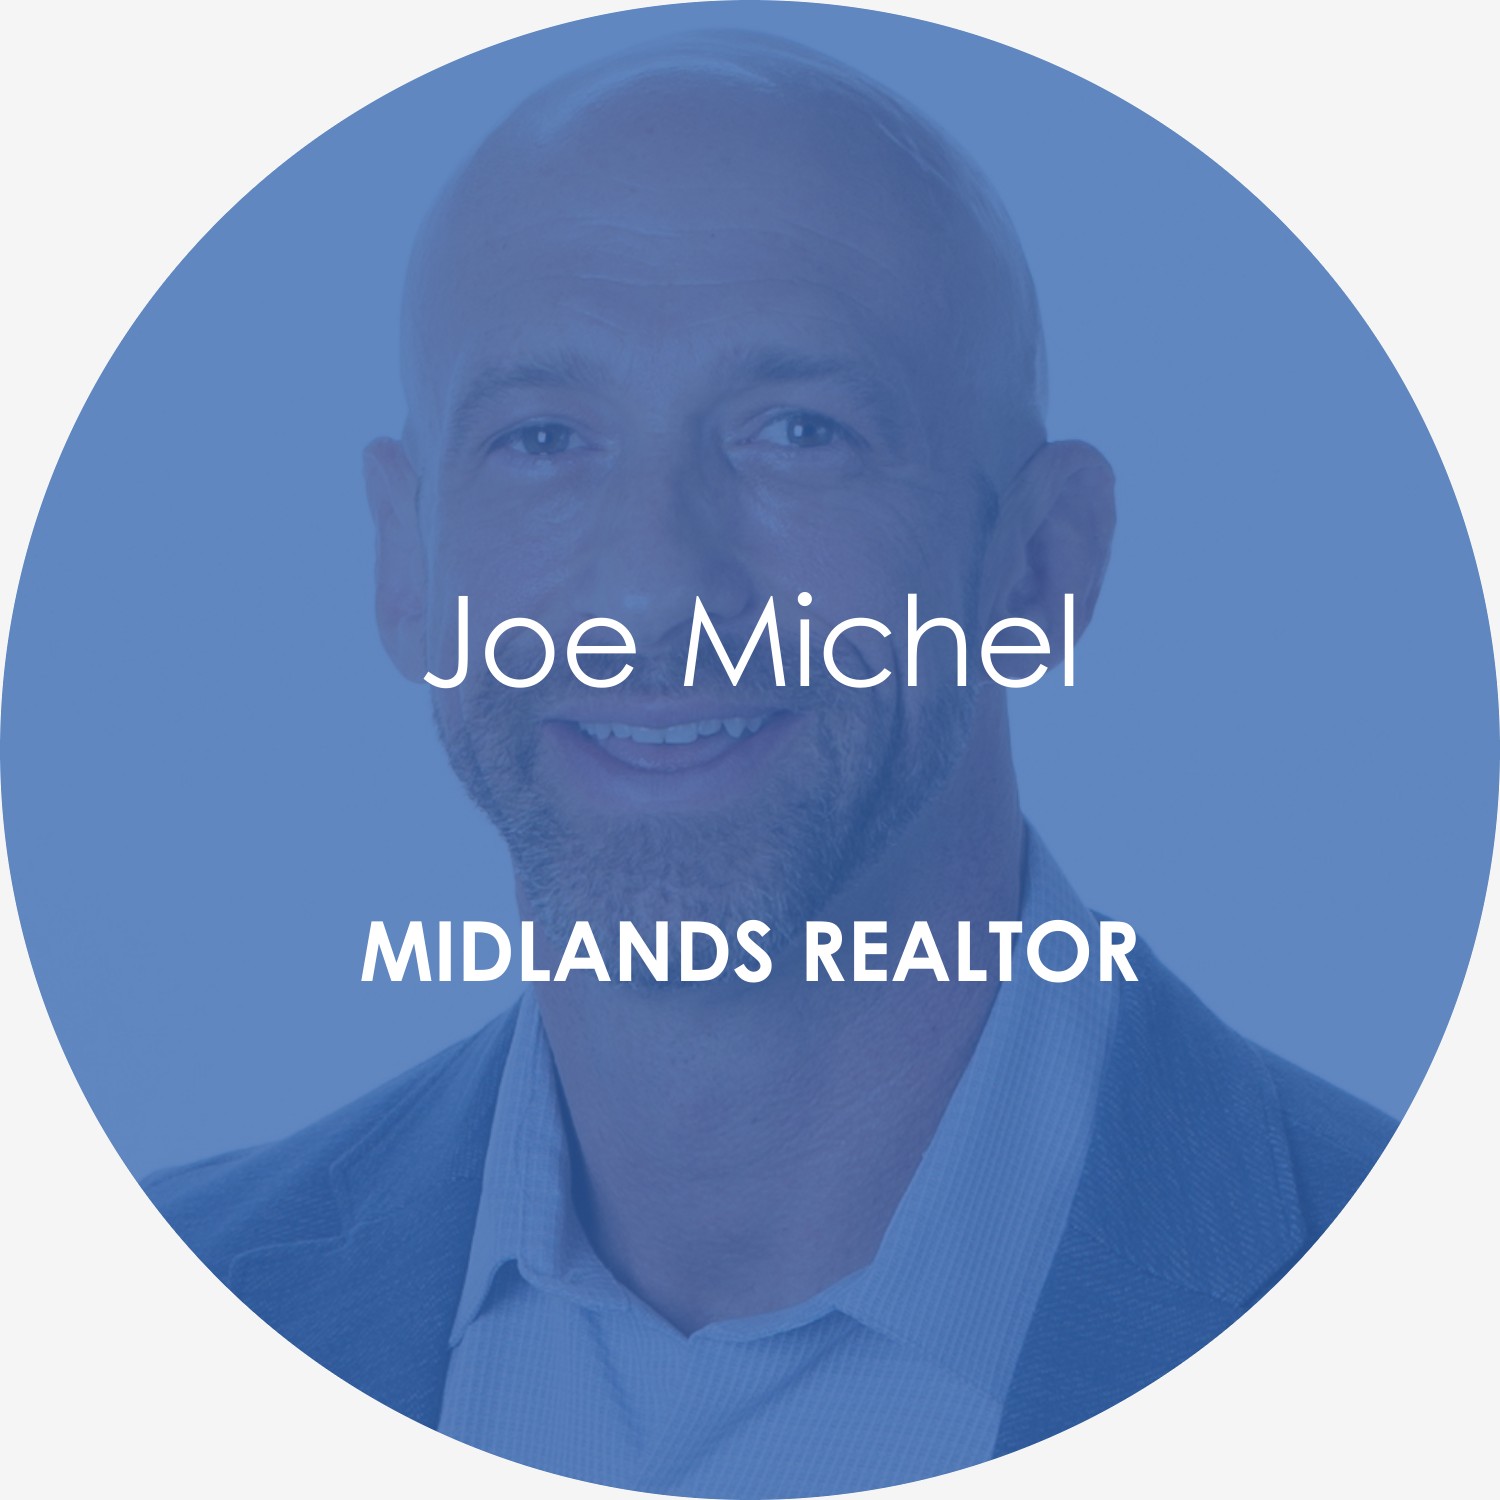 Joe Michel – Midlands Realtor